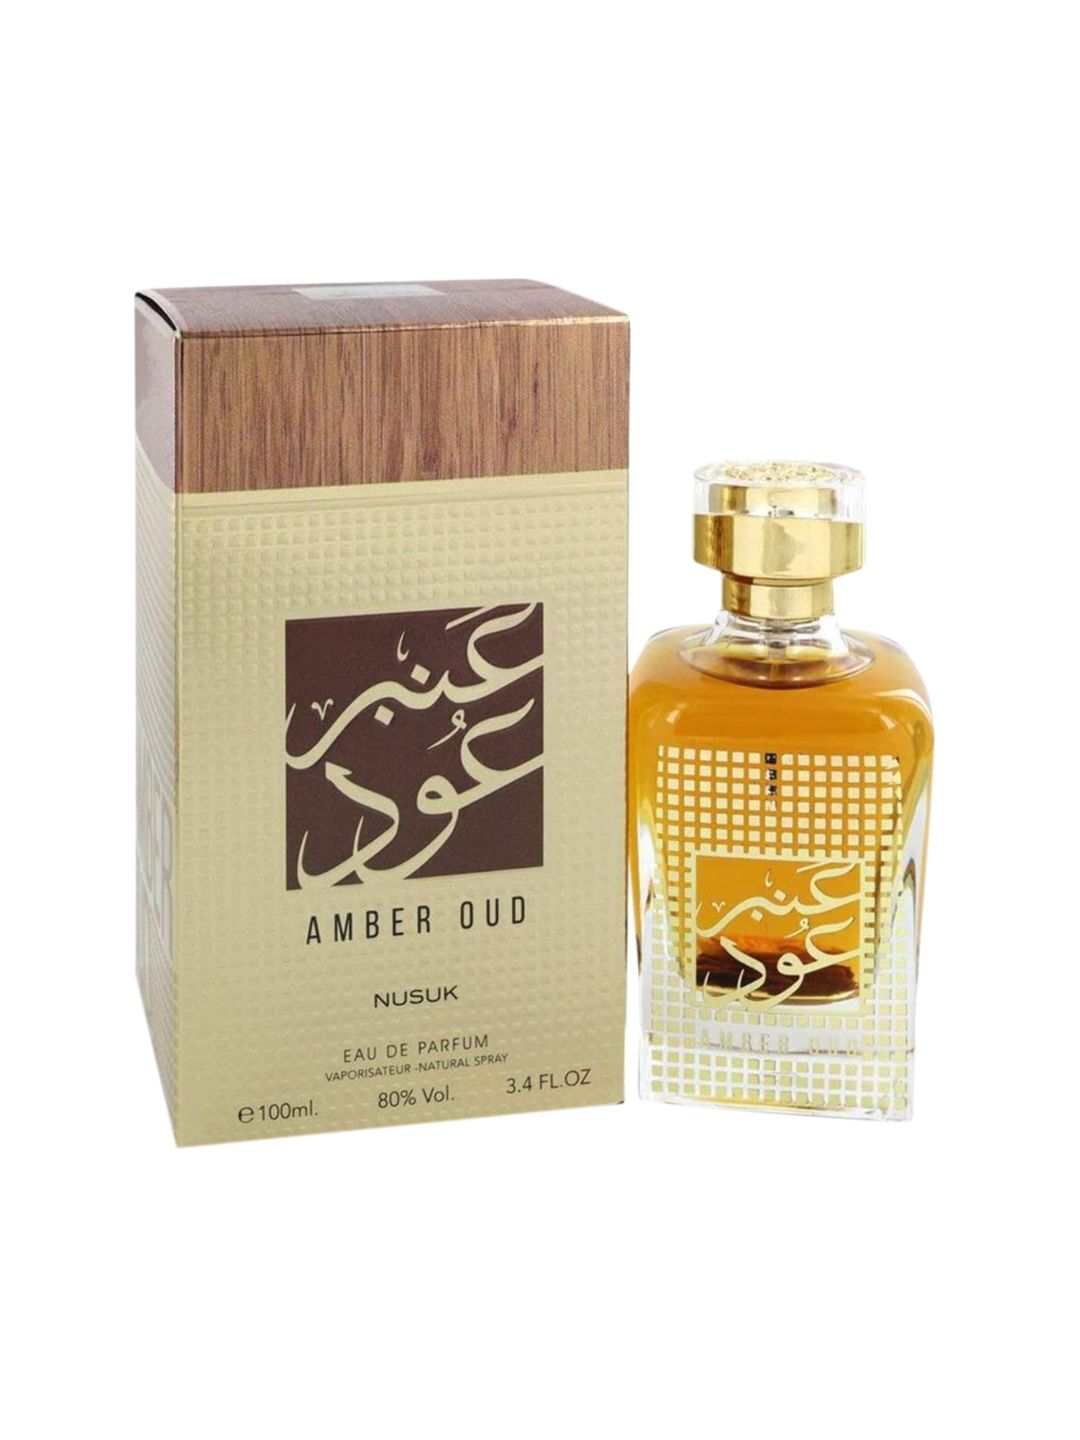 NUSUK Unisex Amber Oud EDP Eau de Parfum 100ml Price in India